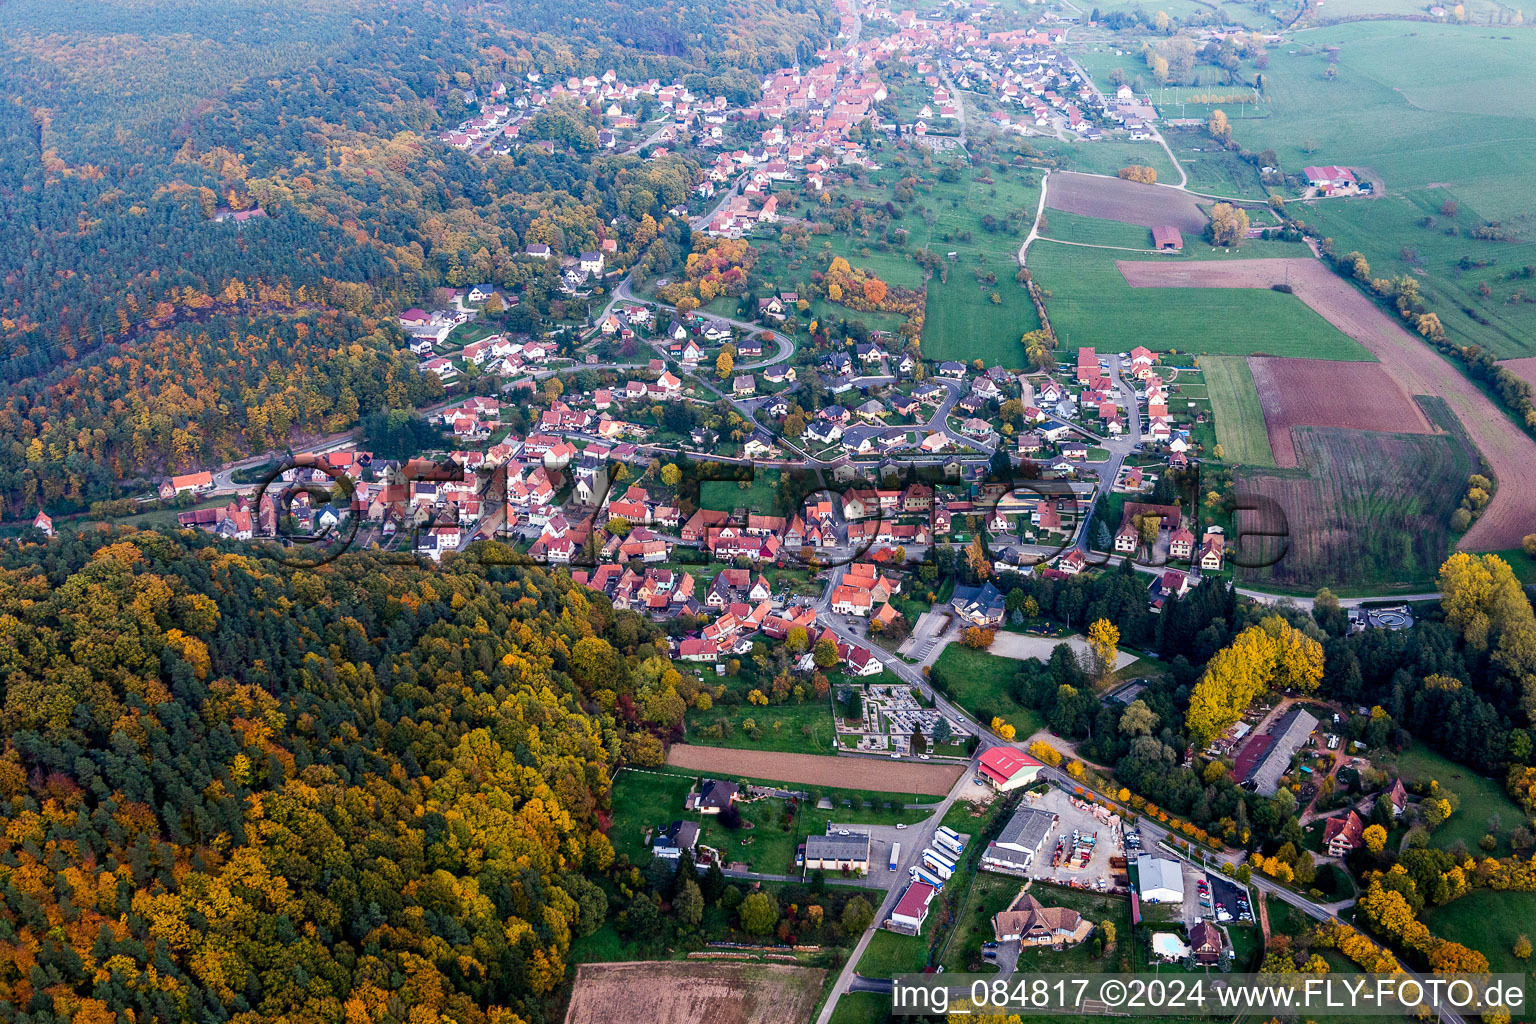 Luftbild von Dorf - Ansicht am Rande von landwirtschaftlichen Feldern und Nutzflächen in Rothbach in Grand Est im Bundesland Bas-Rhin, Frankreich